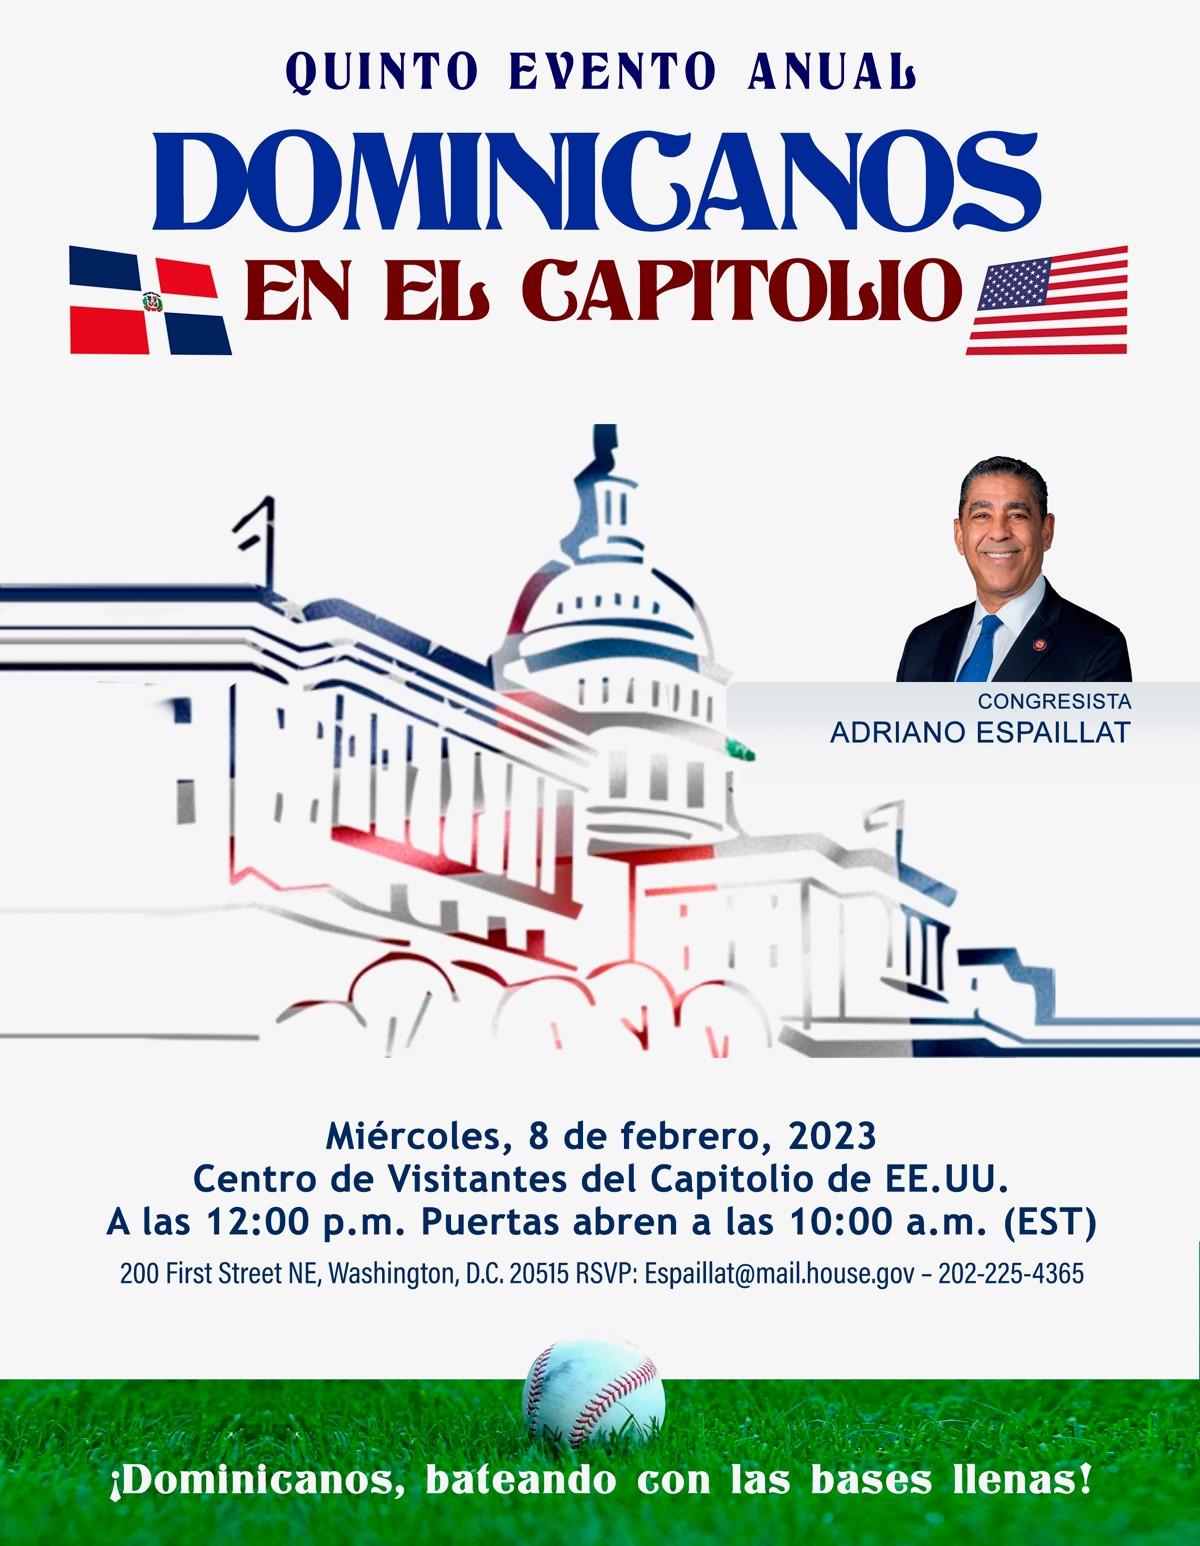 Congresista de EE.UU. Adriano Espaillat encabezará encuentro anual ‘Dominicanos en el Capitolio’, una celebración de la cultura y la herencia dominicanas.